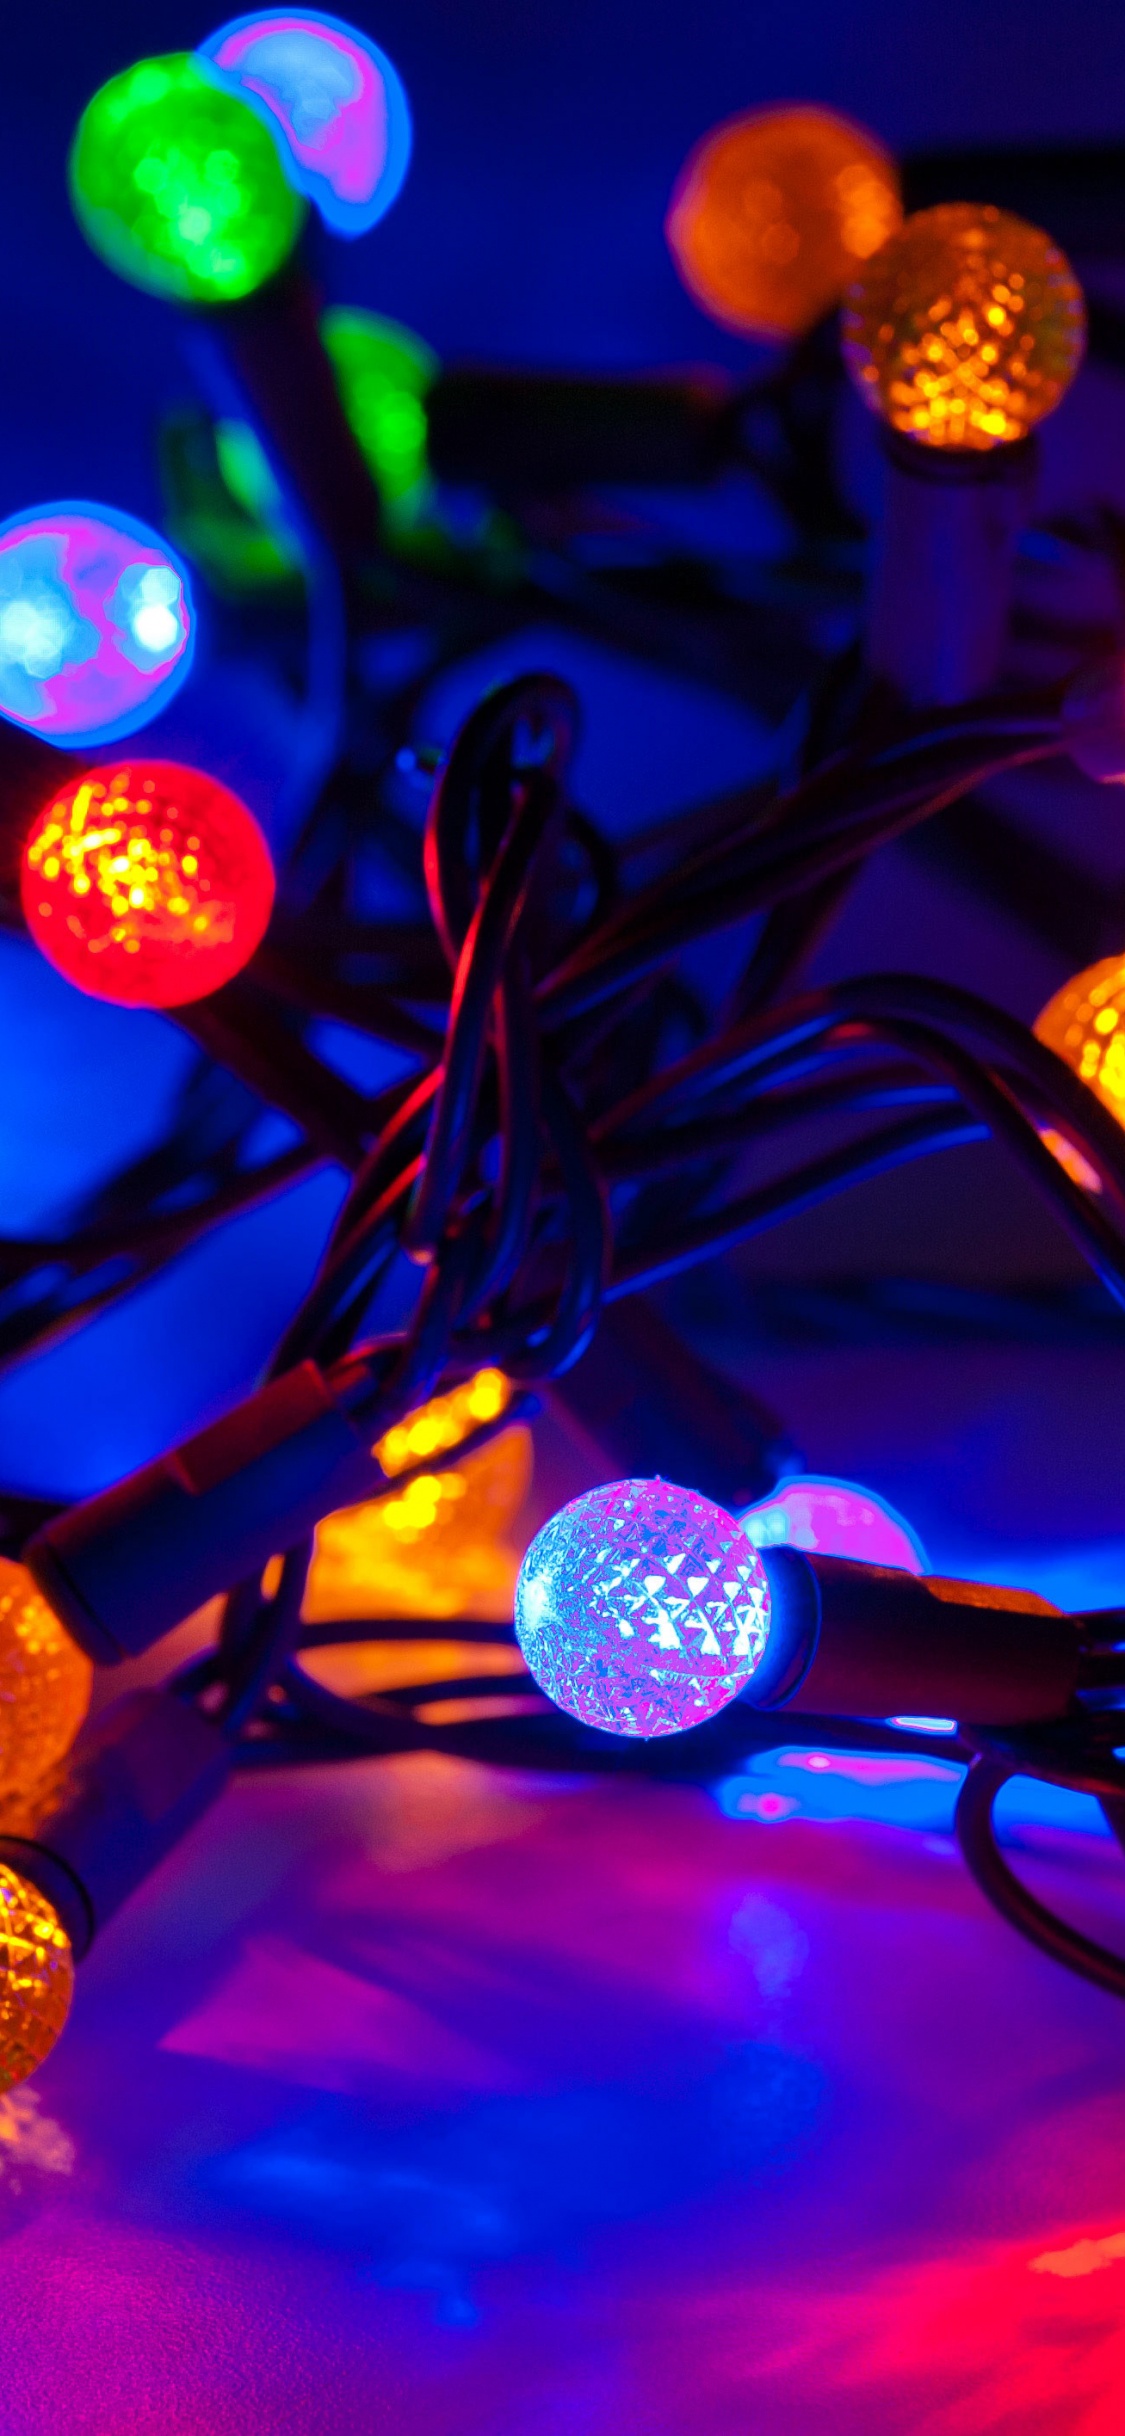 Weihnachtsbeleuchtung, Weihnachten, Licht, Weihnachtsdekoration, Leuchtdiode. Wallpaper in 1125x2436 Resolution